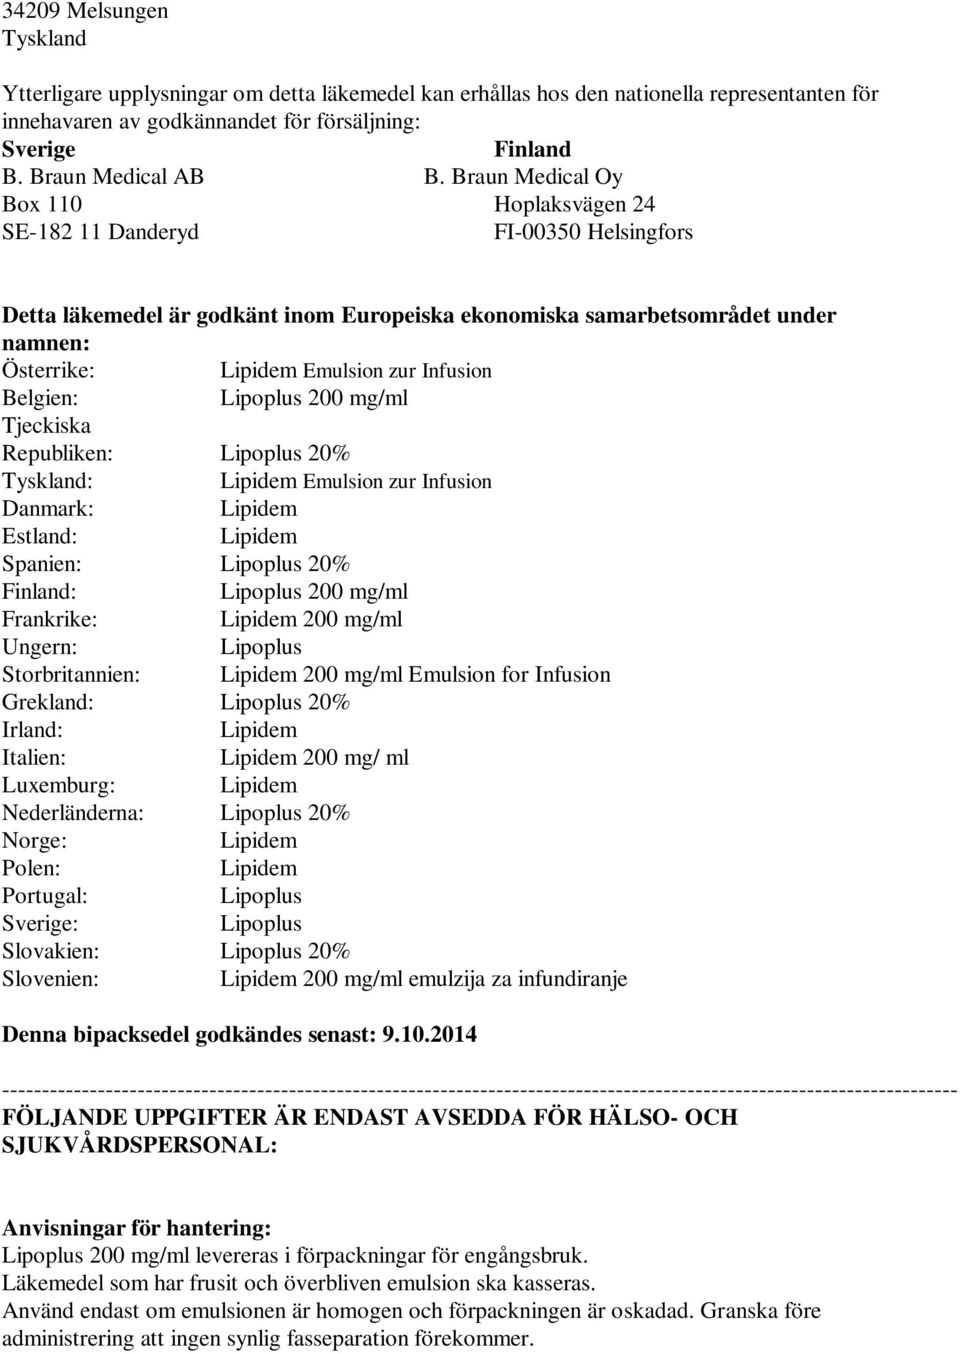 Braun Medical Oy Box 110 Hoplaksvägen 24 SE-182 11 Danderyd FI-00350 Helsingfors Detta läkemedel är godkänt inom Europeiska ekonomiska samarbetsområdet under namnen: Österrike: Emulsion zur Infusion